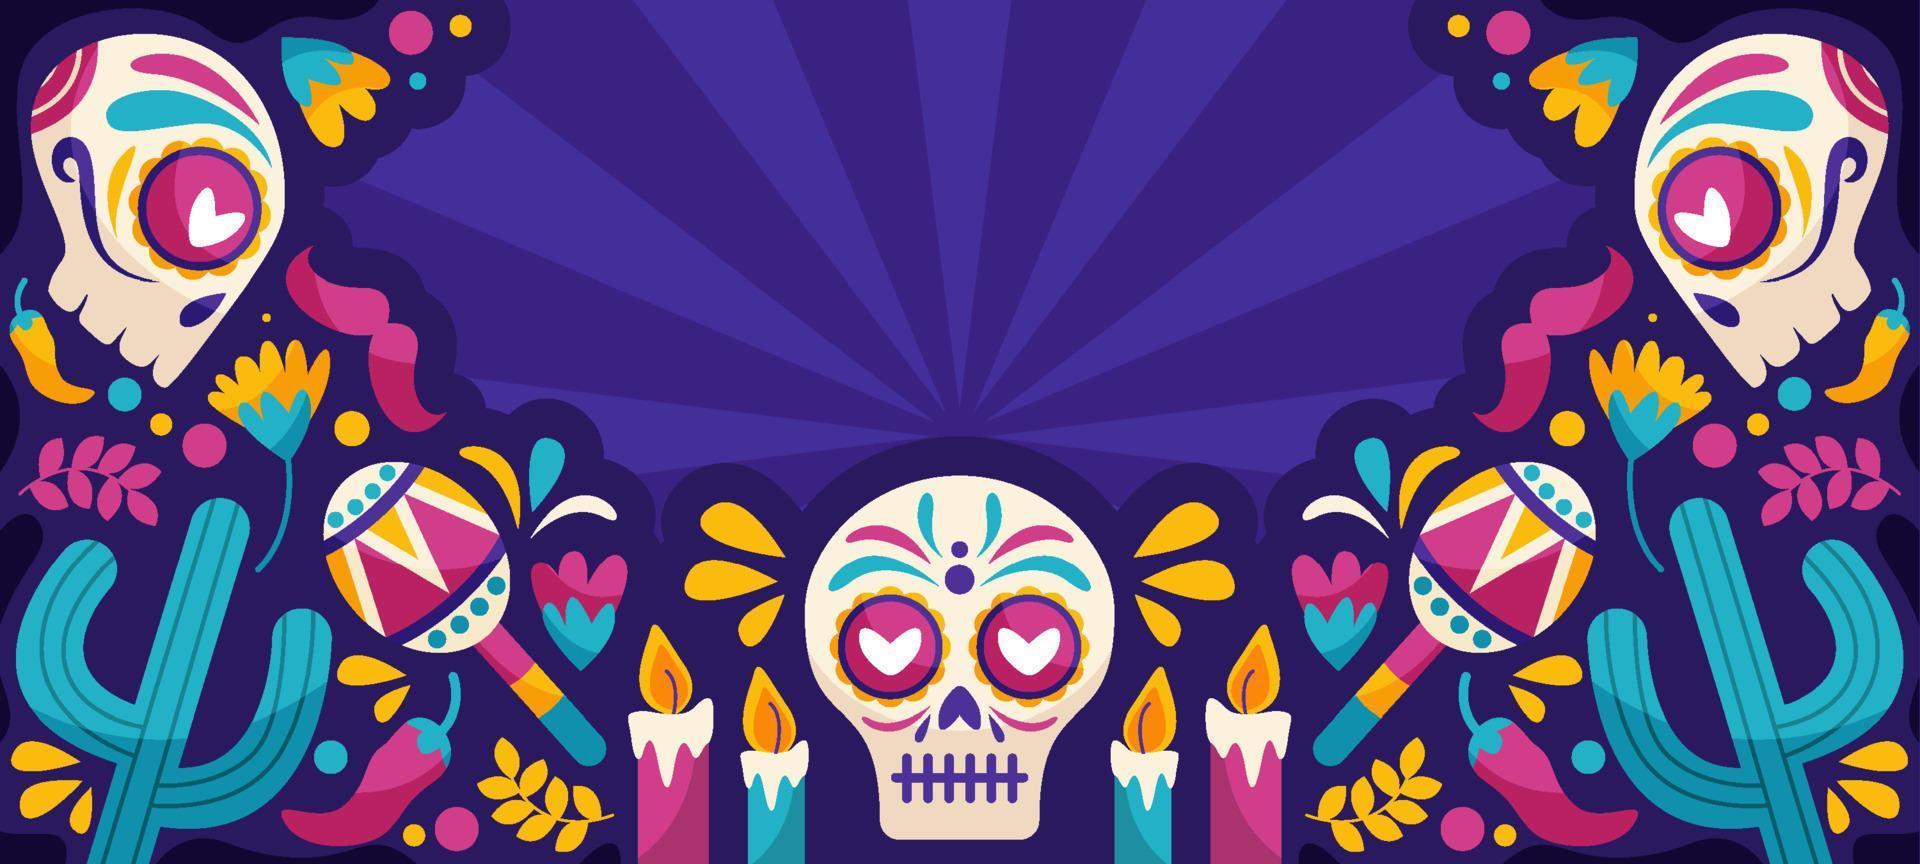 Dia De Muertos Festival Background with Sugar Skull vector